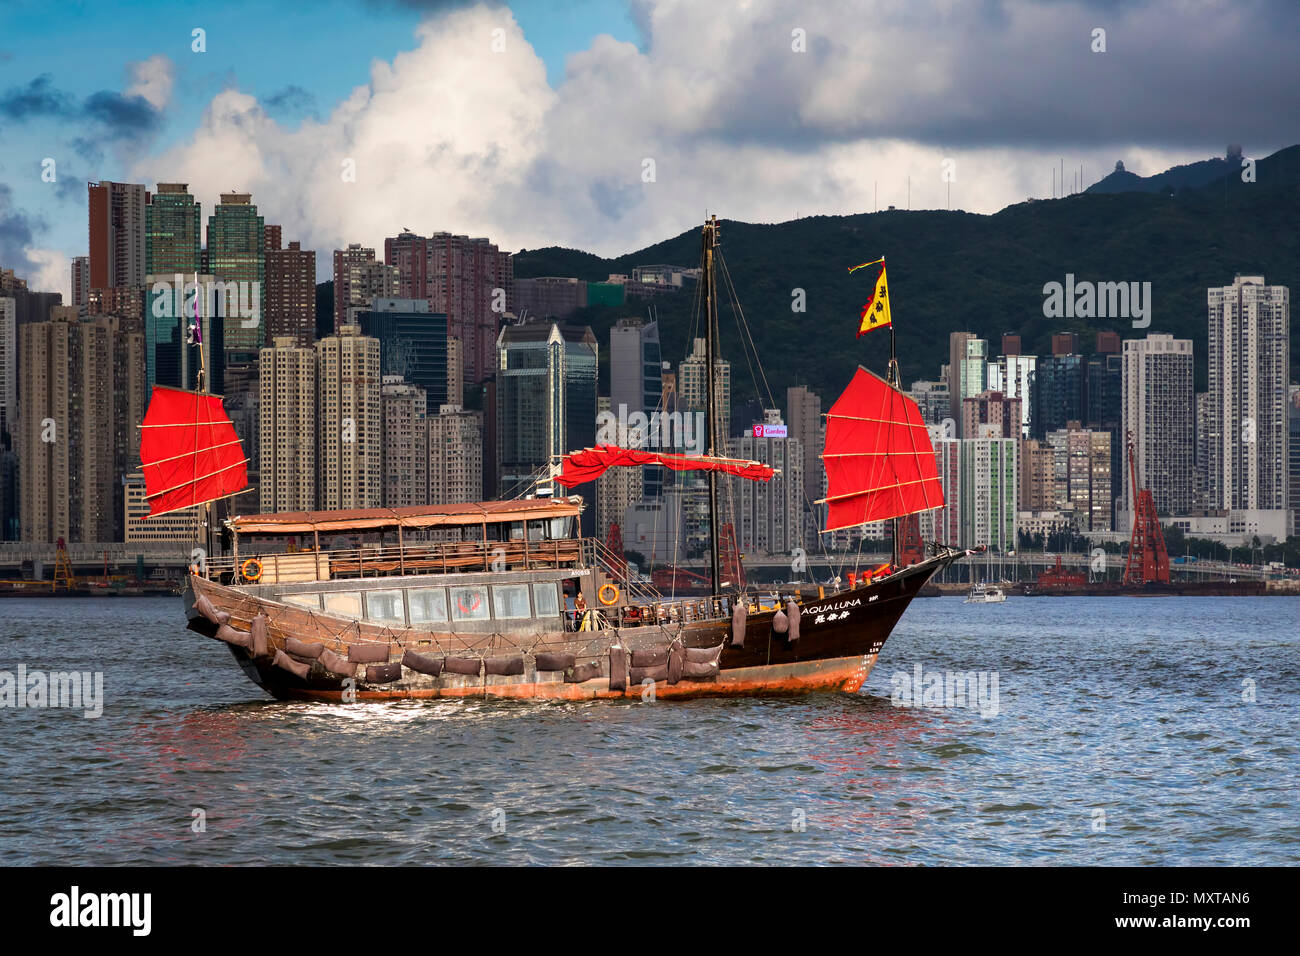 Hong Kong, SAR, China Stock Photo